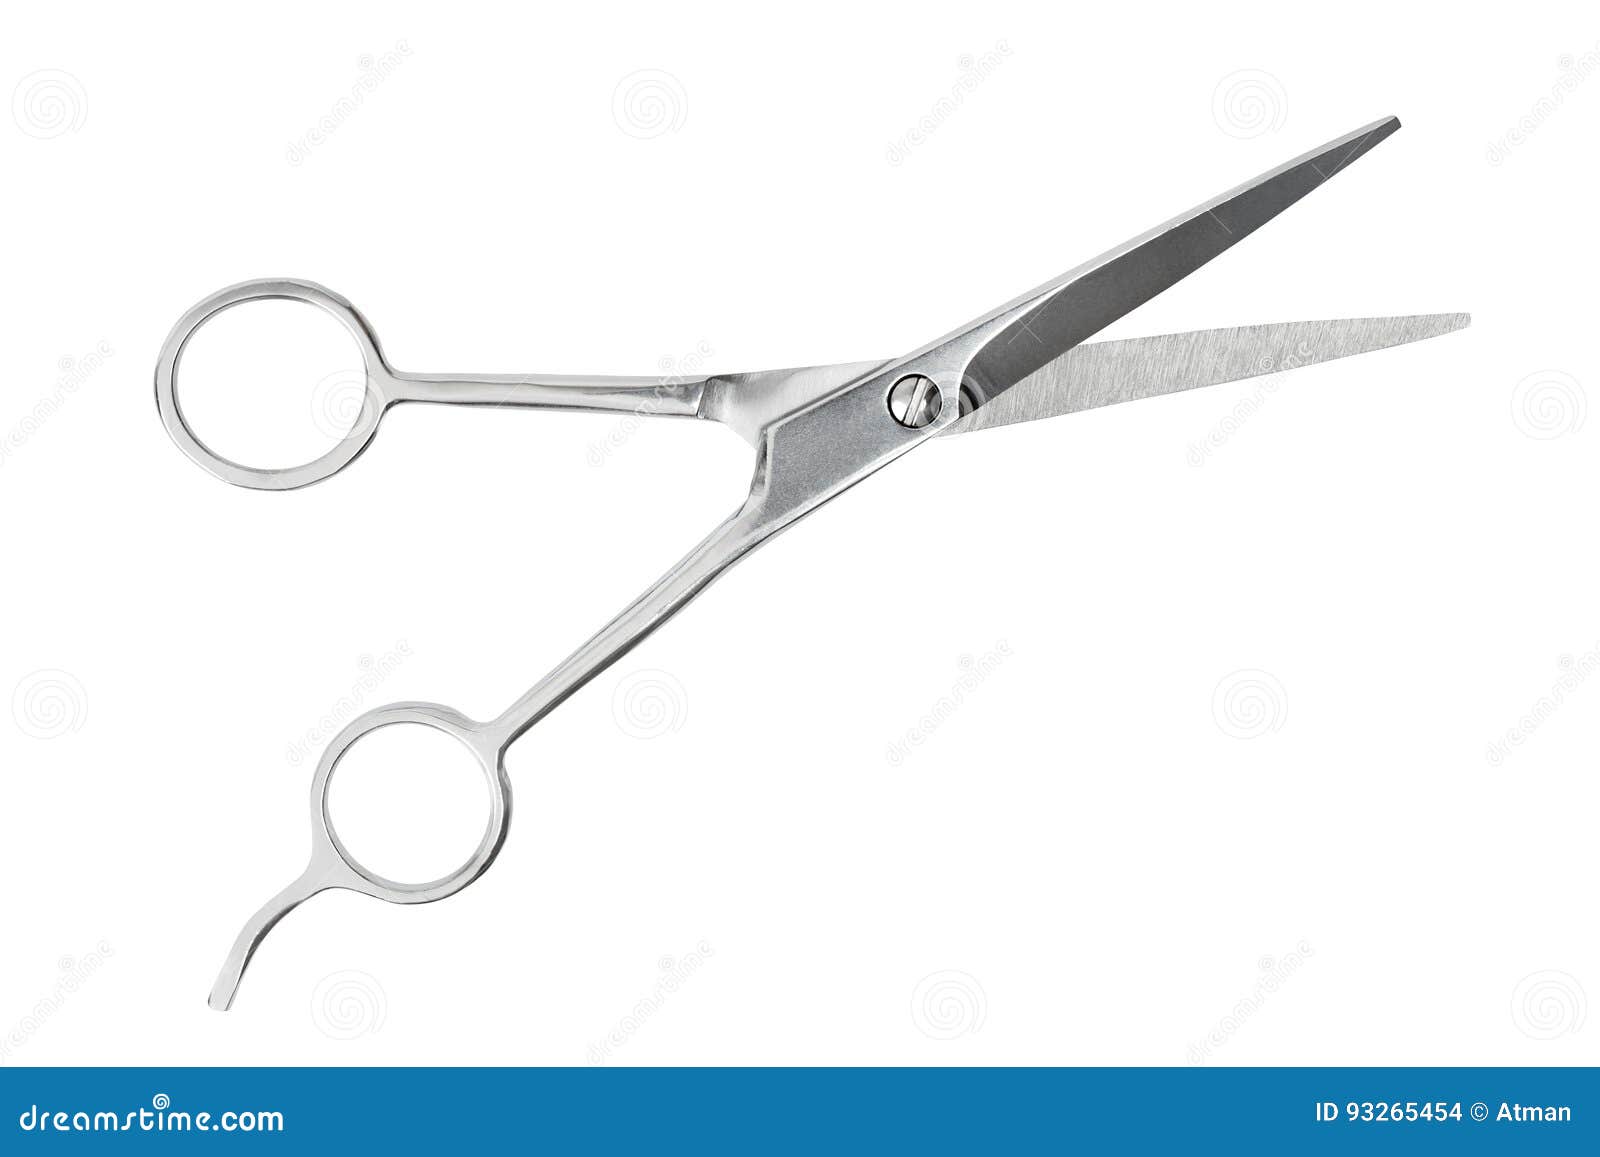 barber scissors on white